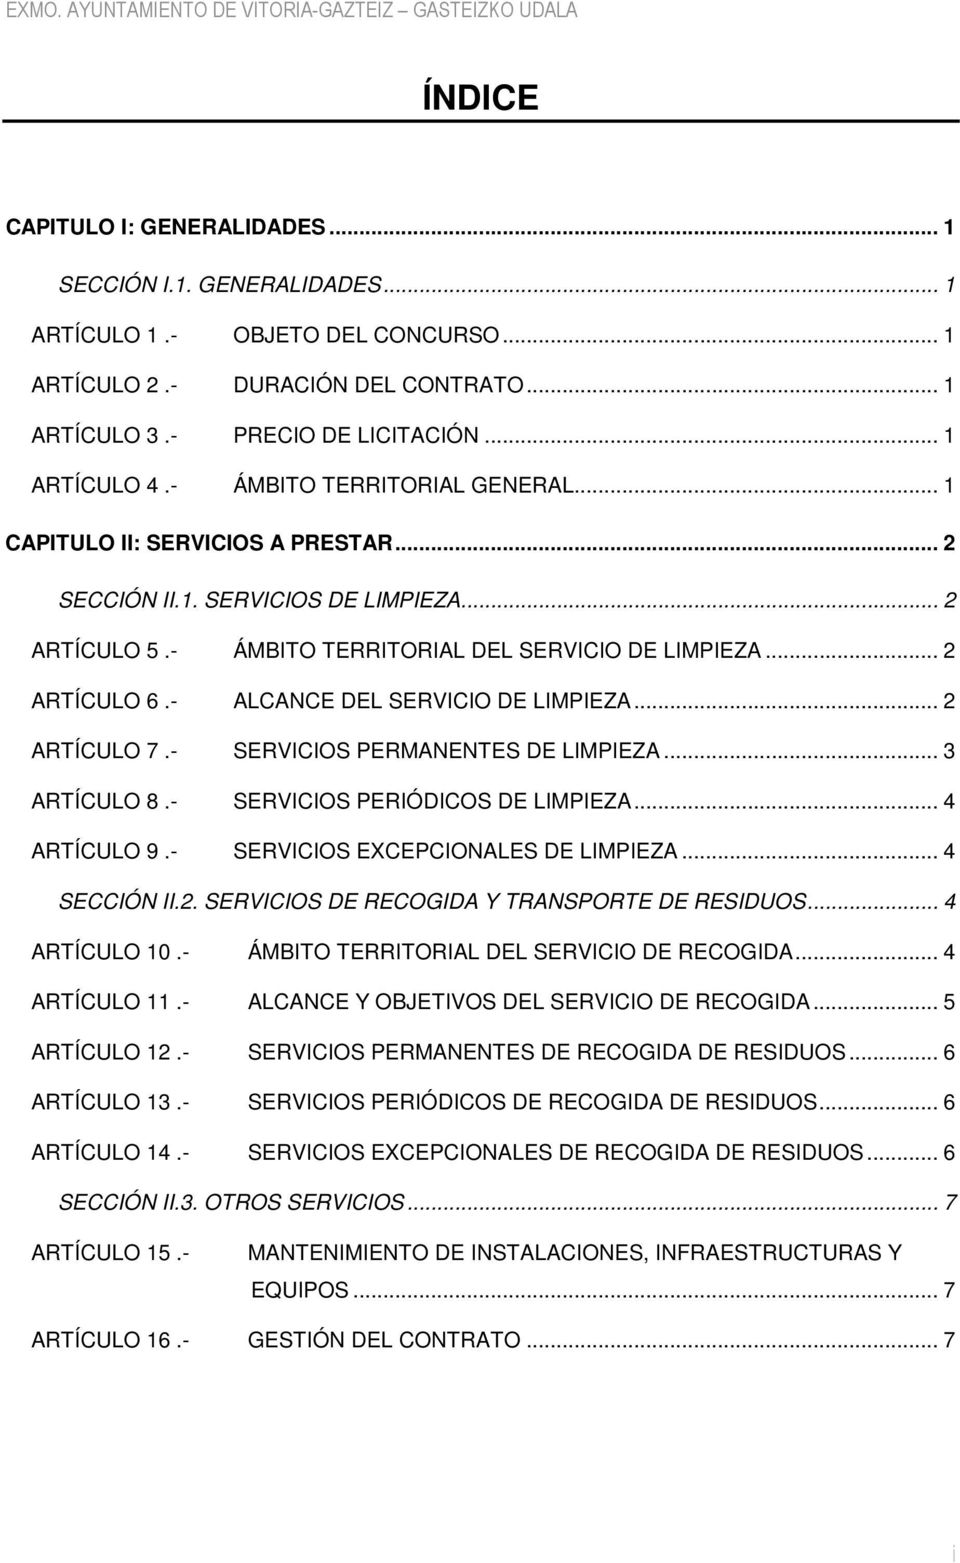 - ALCANCE DEL SERVICIO DE LIMPIEZA... 2 ARTÍCULO 7.- SERVICIOS PERMANENTES DE LIMPIEZA... 3 ARTÍCULO 8.- SERVICIOS PERIÓDICOS DE LIMPIEZA... 4 ARTÍCULO 9.- SERVICIOS EXCEPCIONALES DE LIMPIEZA.